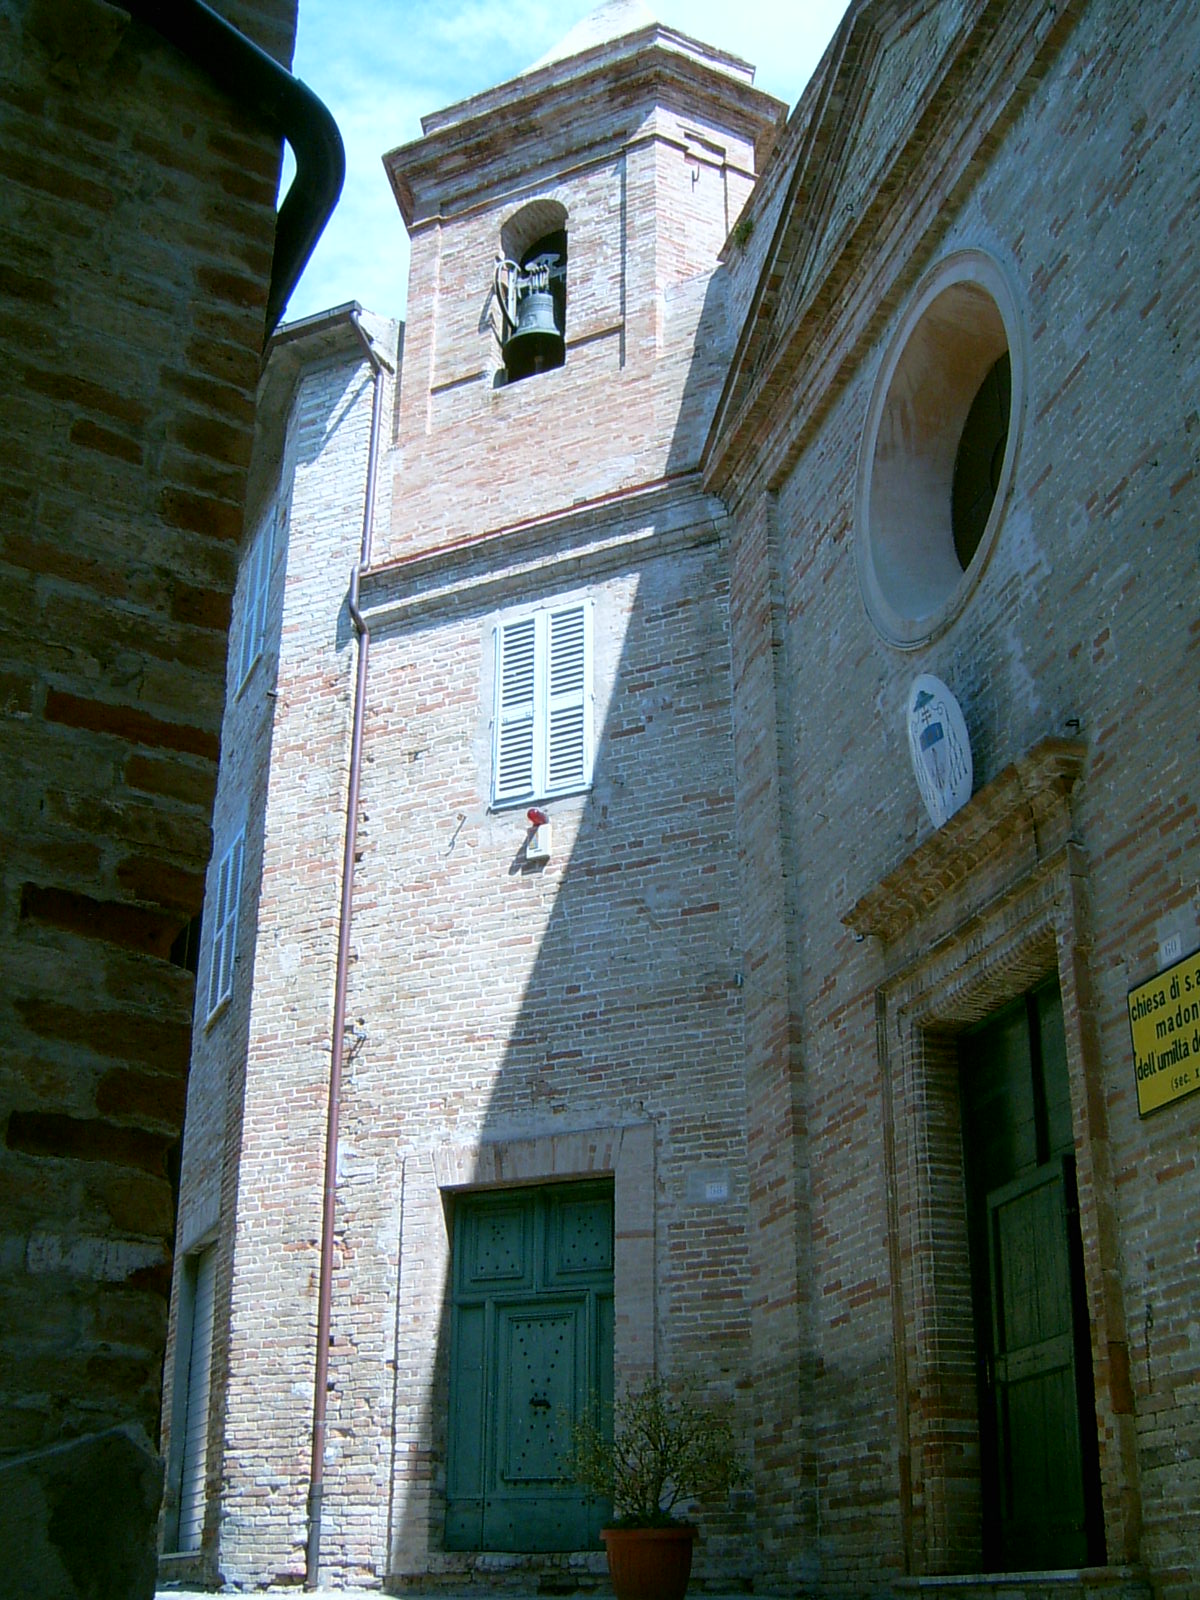 Convento di S. Andrea (convento, francescano) - Montegiorgio (AP) 